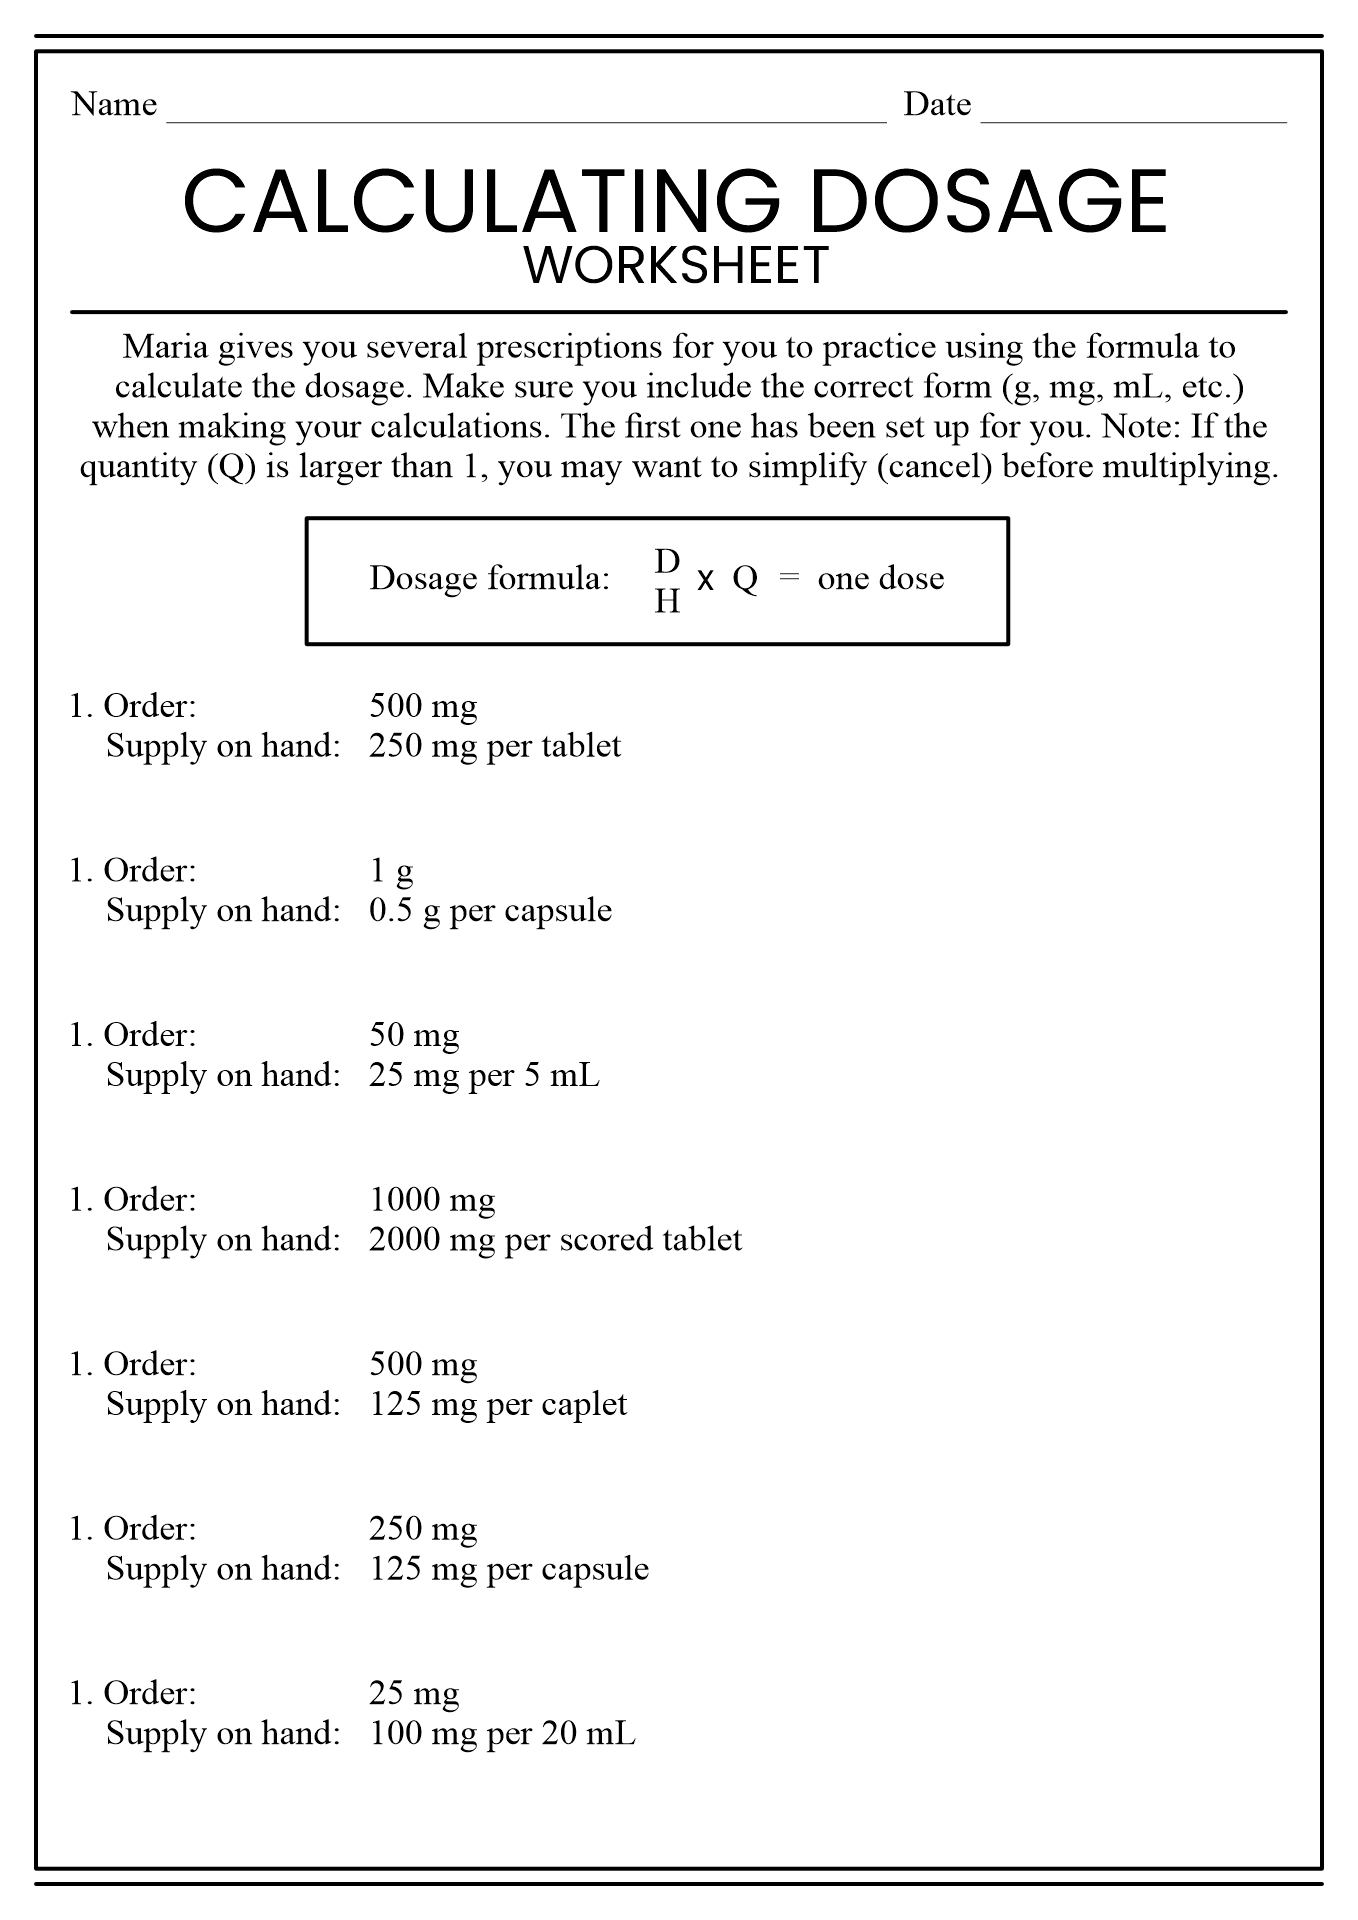 16 Best Images of Nursing Math Worksheets - Nursing Dosage ...